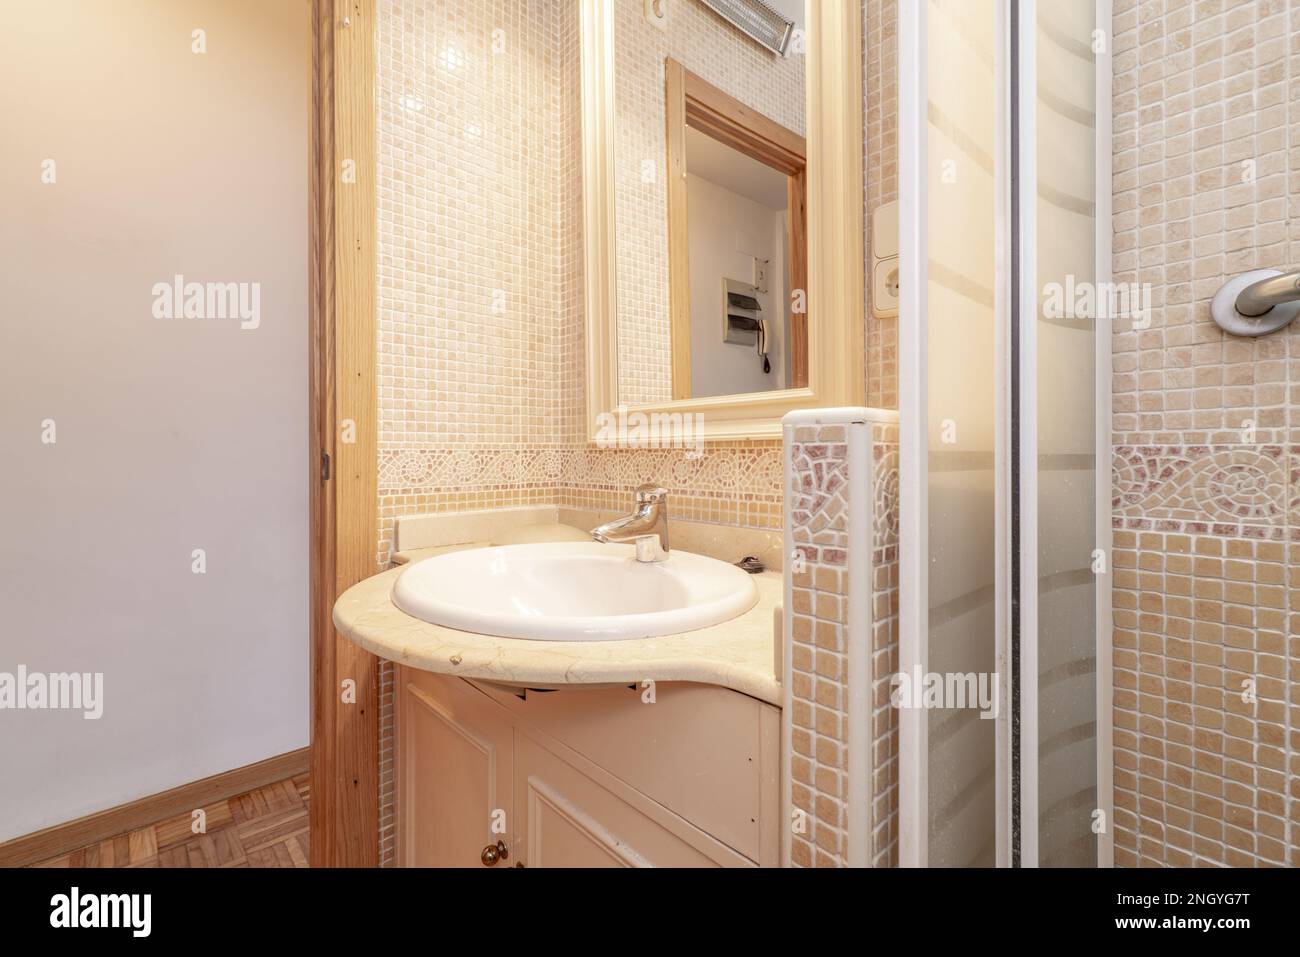 Badezimmer mit cremefarbener Marmorplatte und Spiegel mit Holzrahmen und Duschschale mit Fliesen und Türrahmen aus Eichenholz Stockfoto